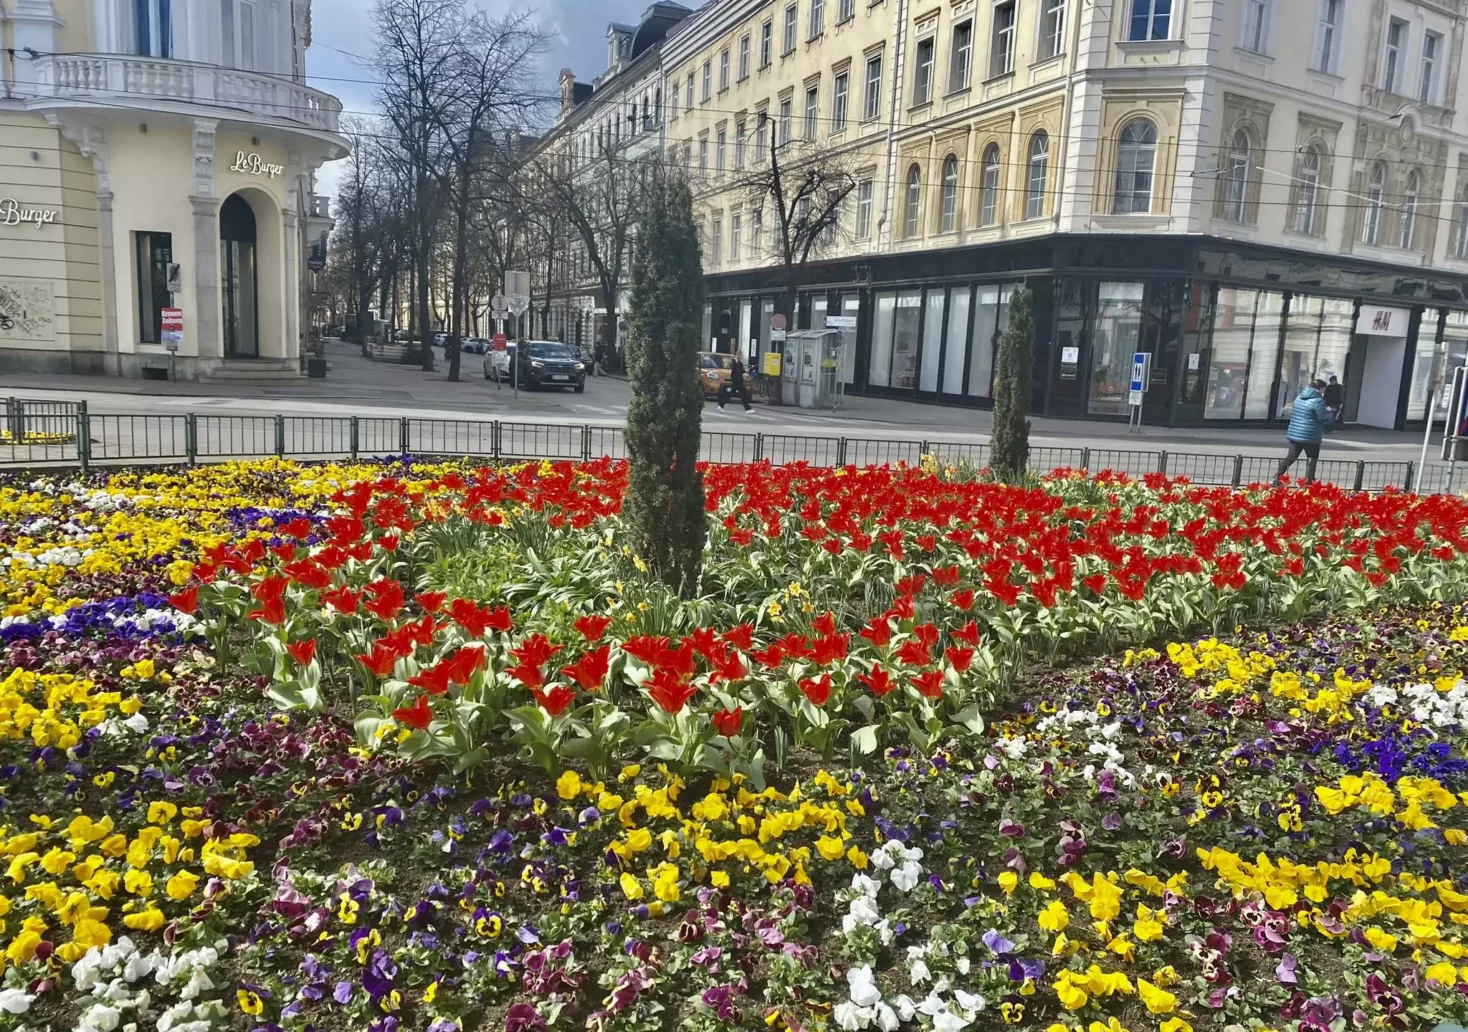 Bild auf 5min.at zeigt ein Blumen-Beet beim Eisernen Tor in Graz.